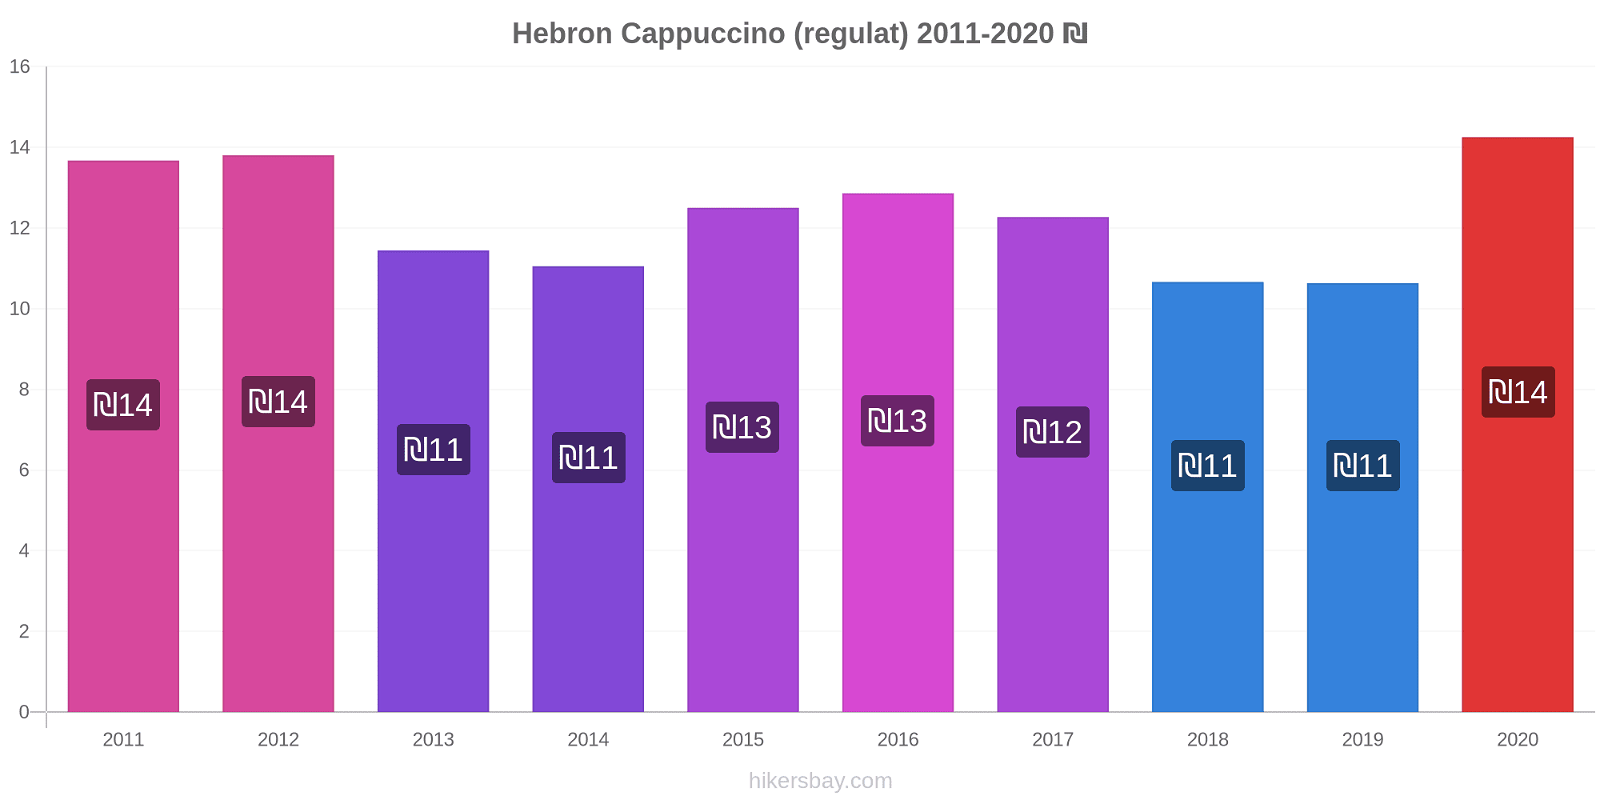 Hebron modificări de preț Cappuccino (regulat) hikersbay.com